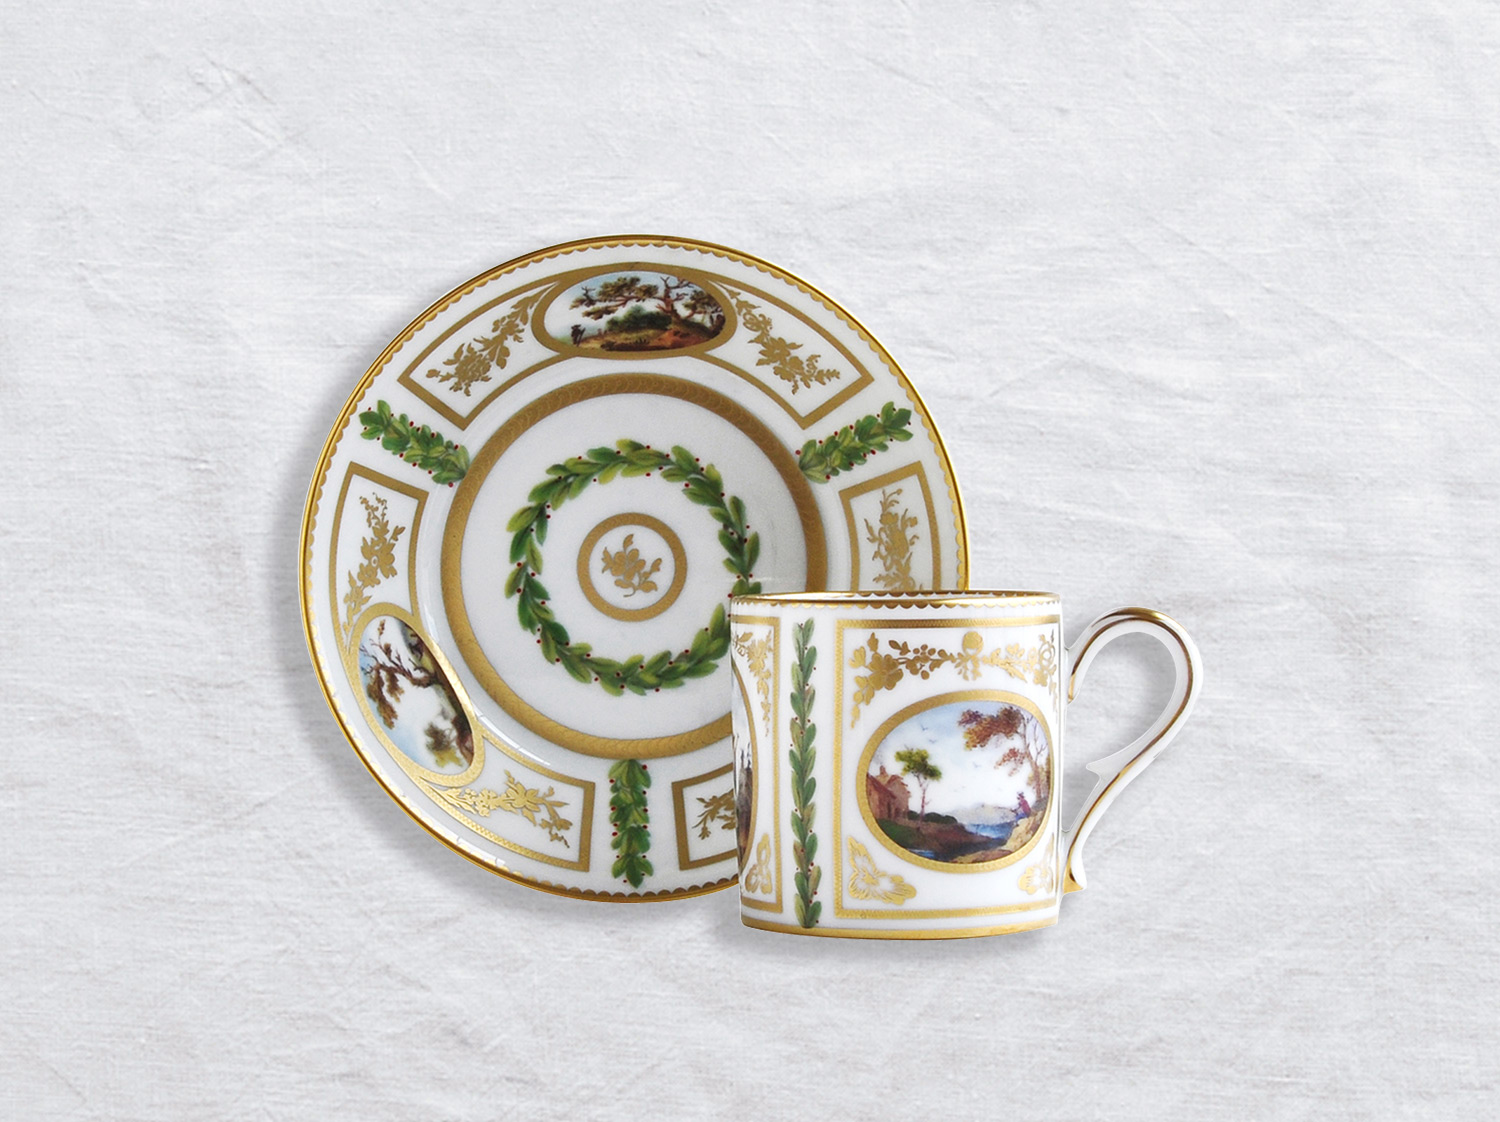 カップ&ソーサー リトロン en porcelaine de la collection Le timbalier chinois Bernardaud